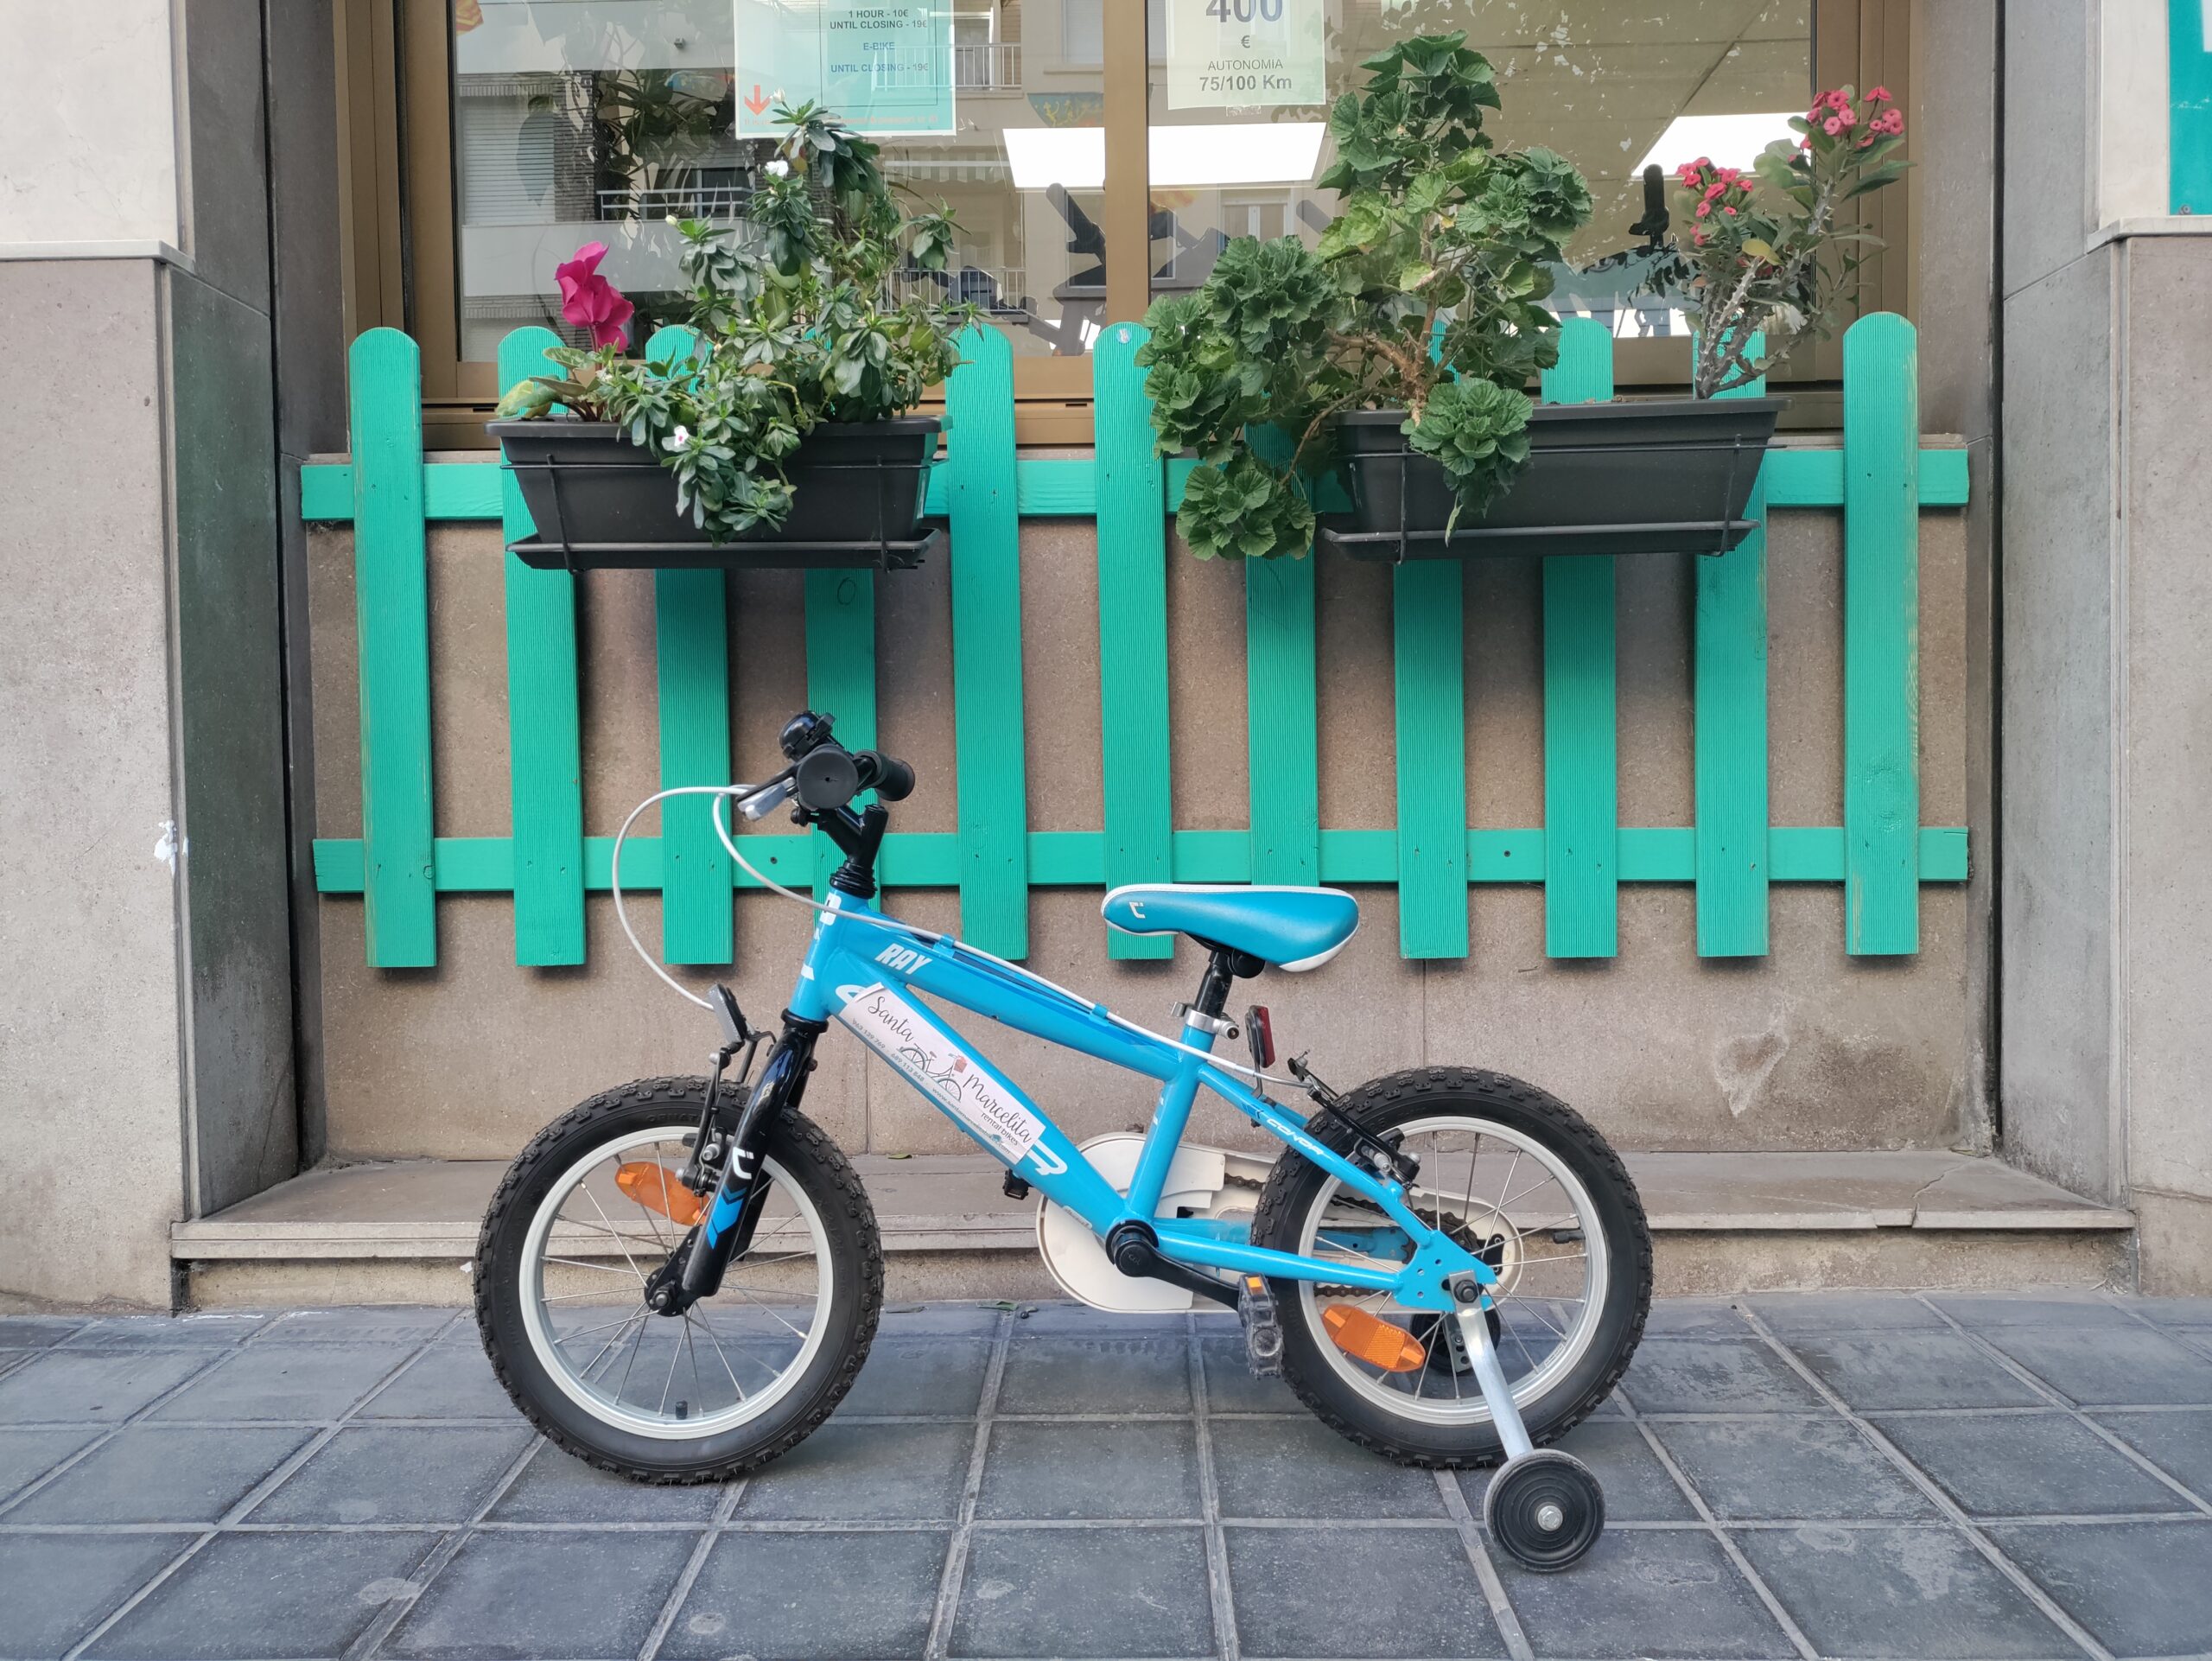 alquiler de bicicletas en valencia - bici de niño pequeño